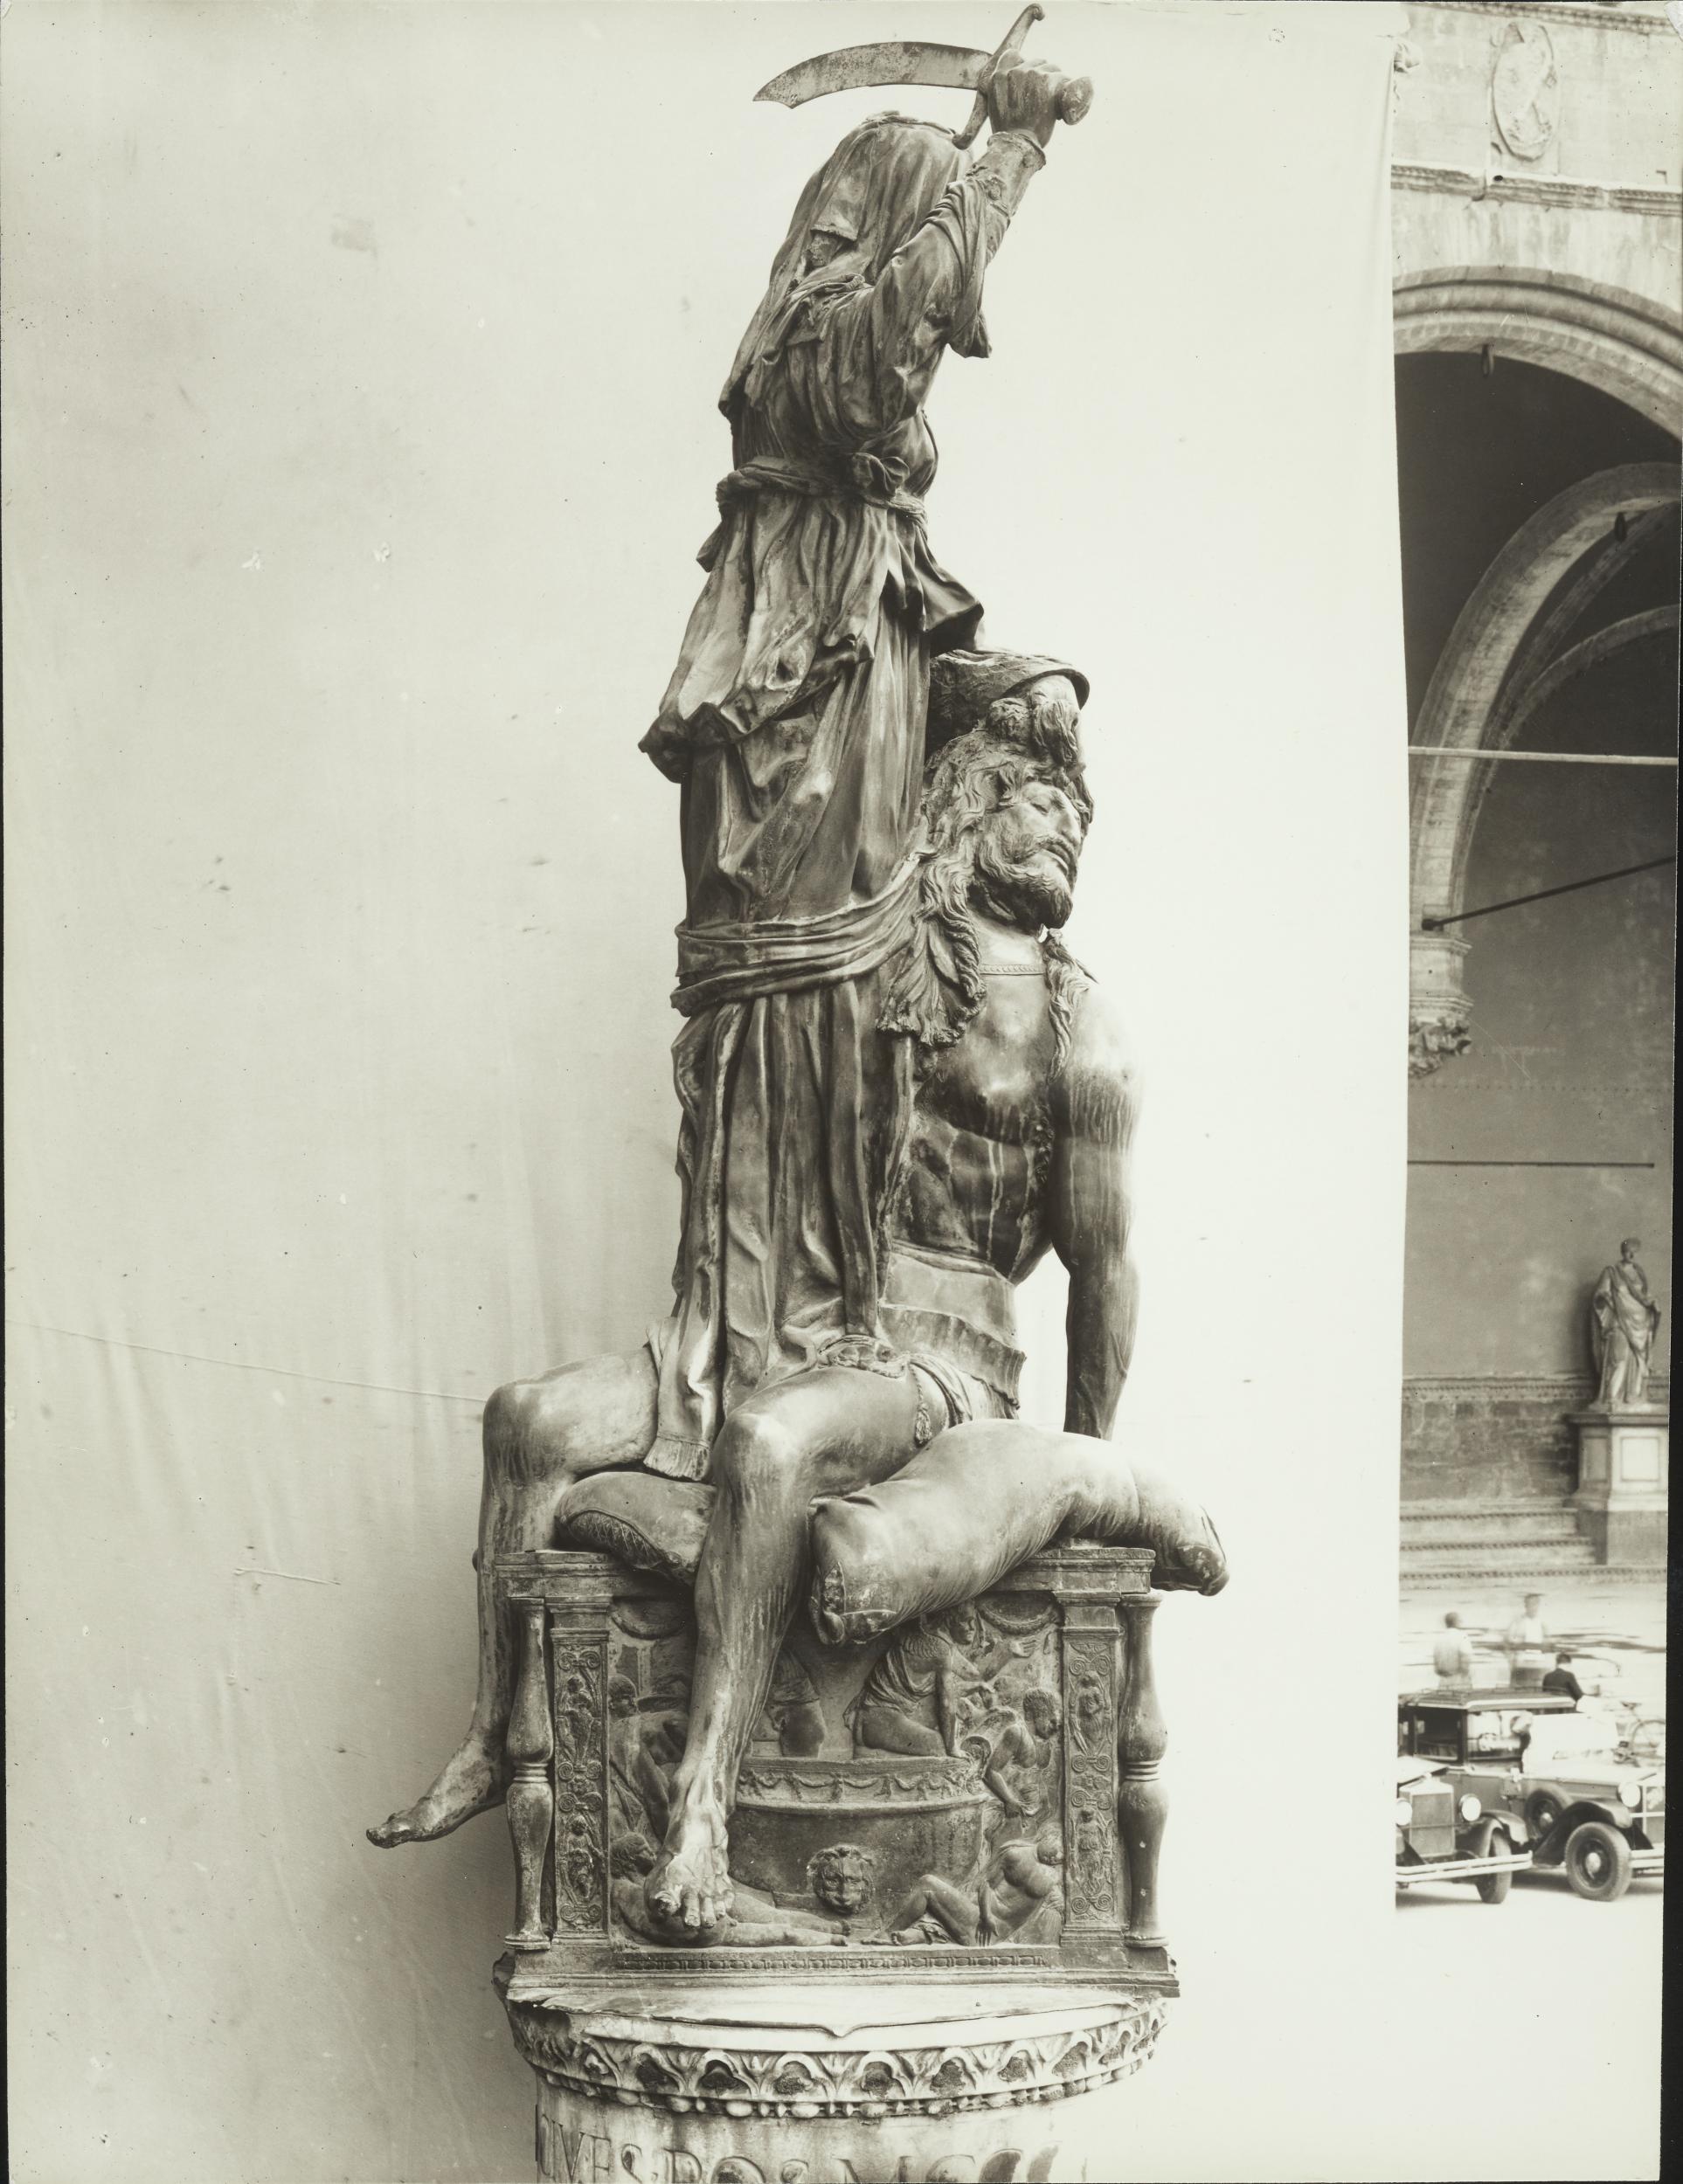 Gino Malenotti, Firenze - Piazza della Signoria oggi a Palazzo Vecchio, La Giuditta, figura intera, 1931- 1938, gelatina ai sali d'argento, MPI6022122